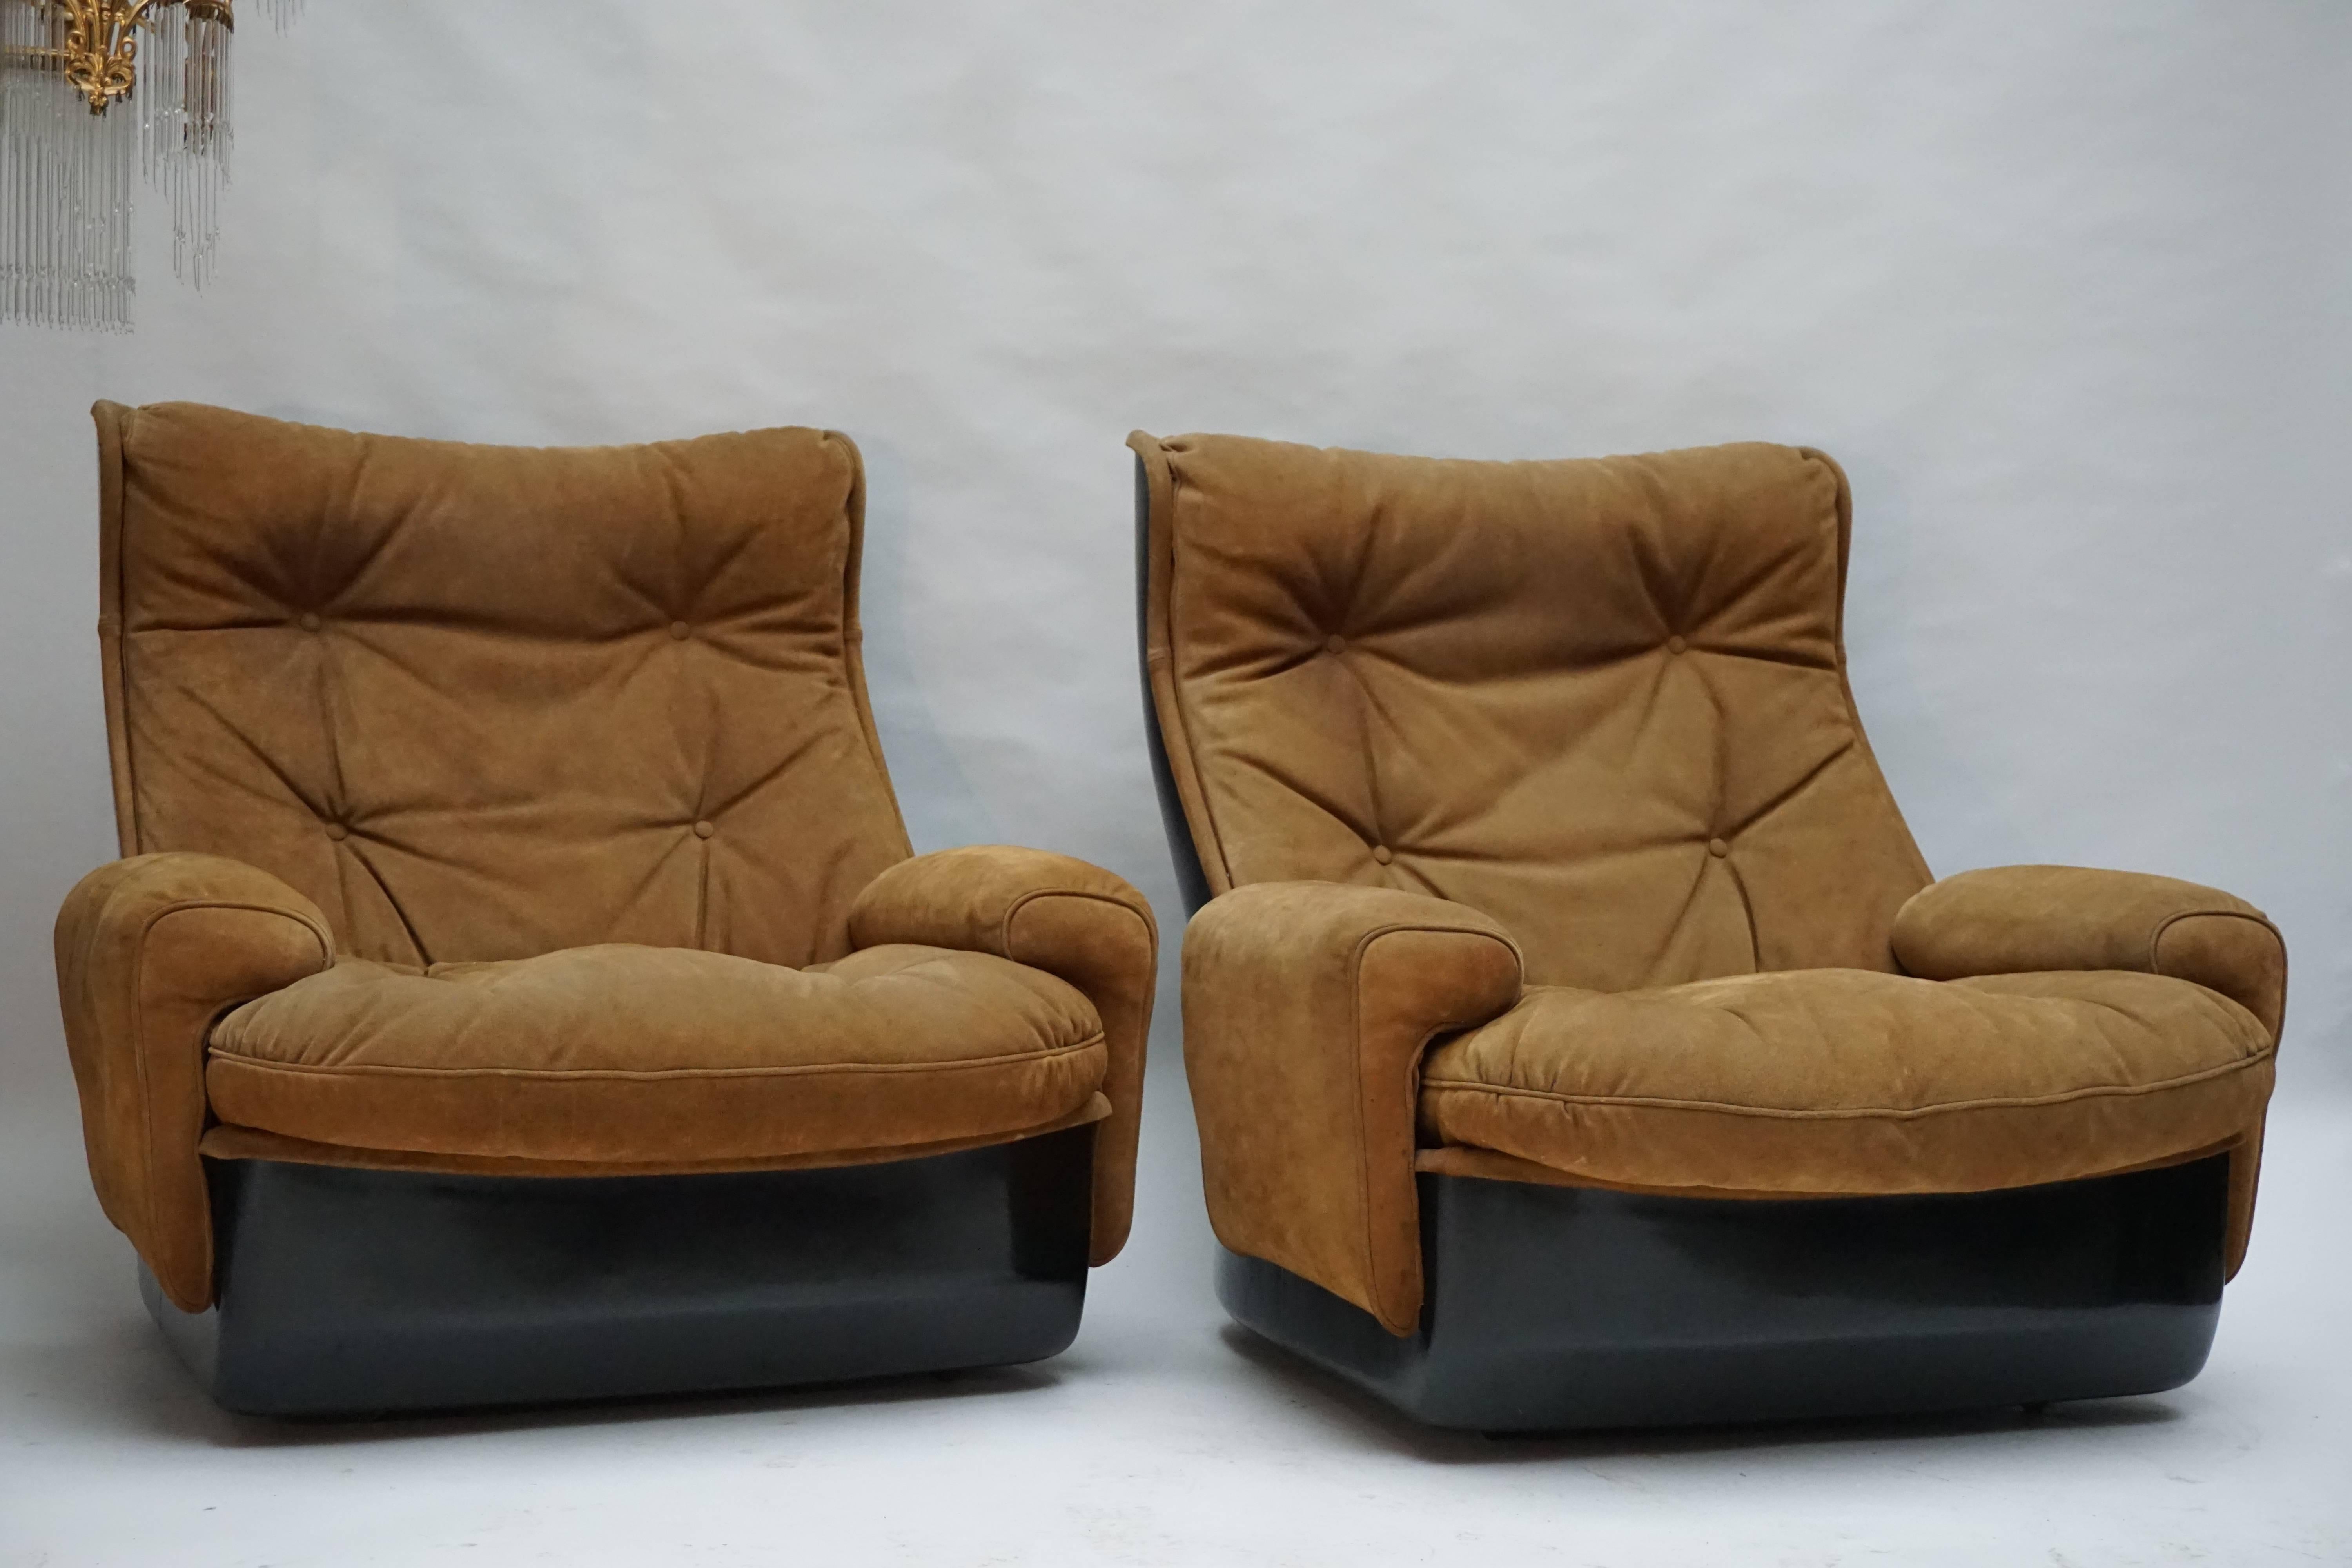 Zwei Lounge-Sessel auf Rollen des französischen Herstellers Airborne International.
Die Schalen sind aus schwarzem Fiberglas und die Sitzfläche ist mit Leder bezogen, das mit Knöpfen versehen ist.
